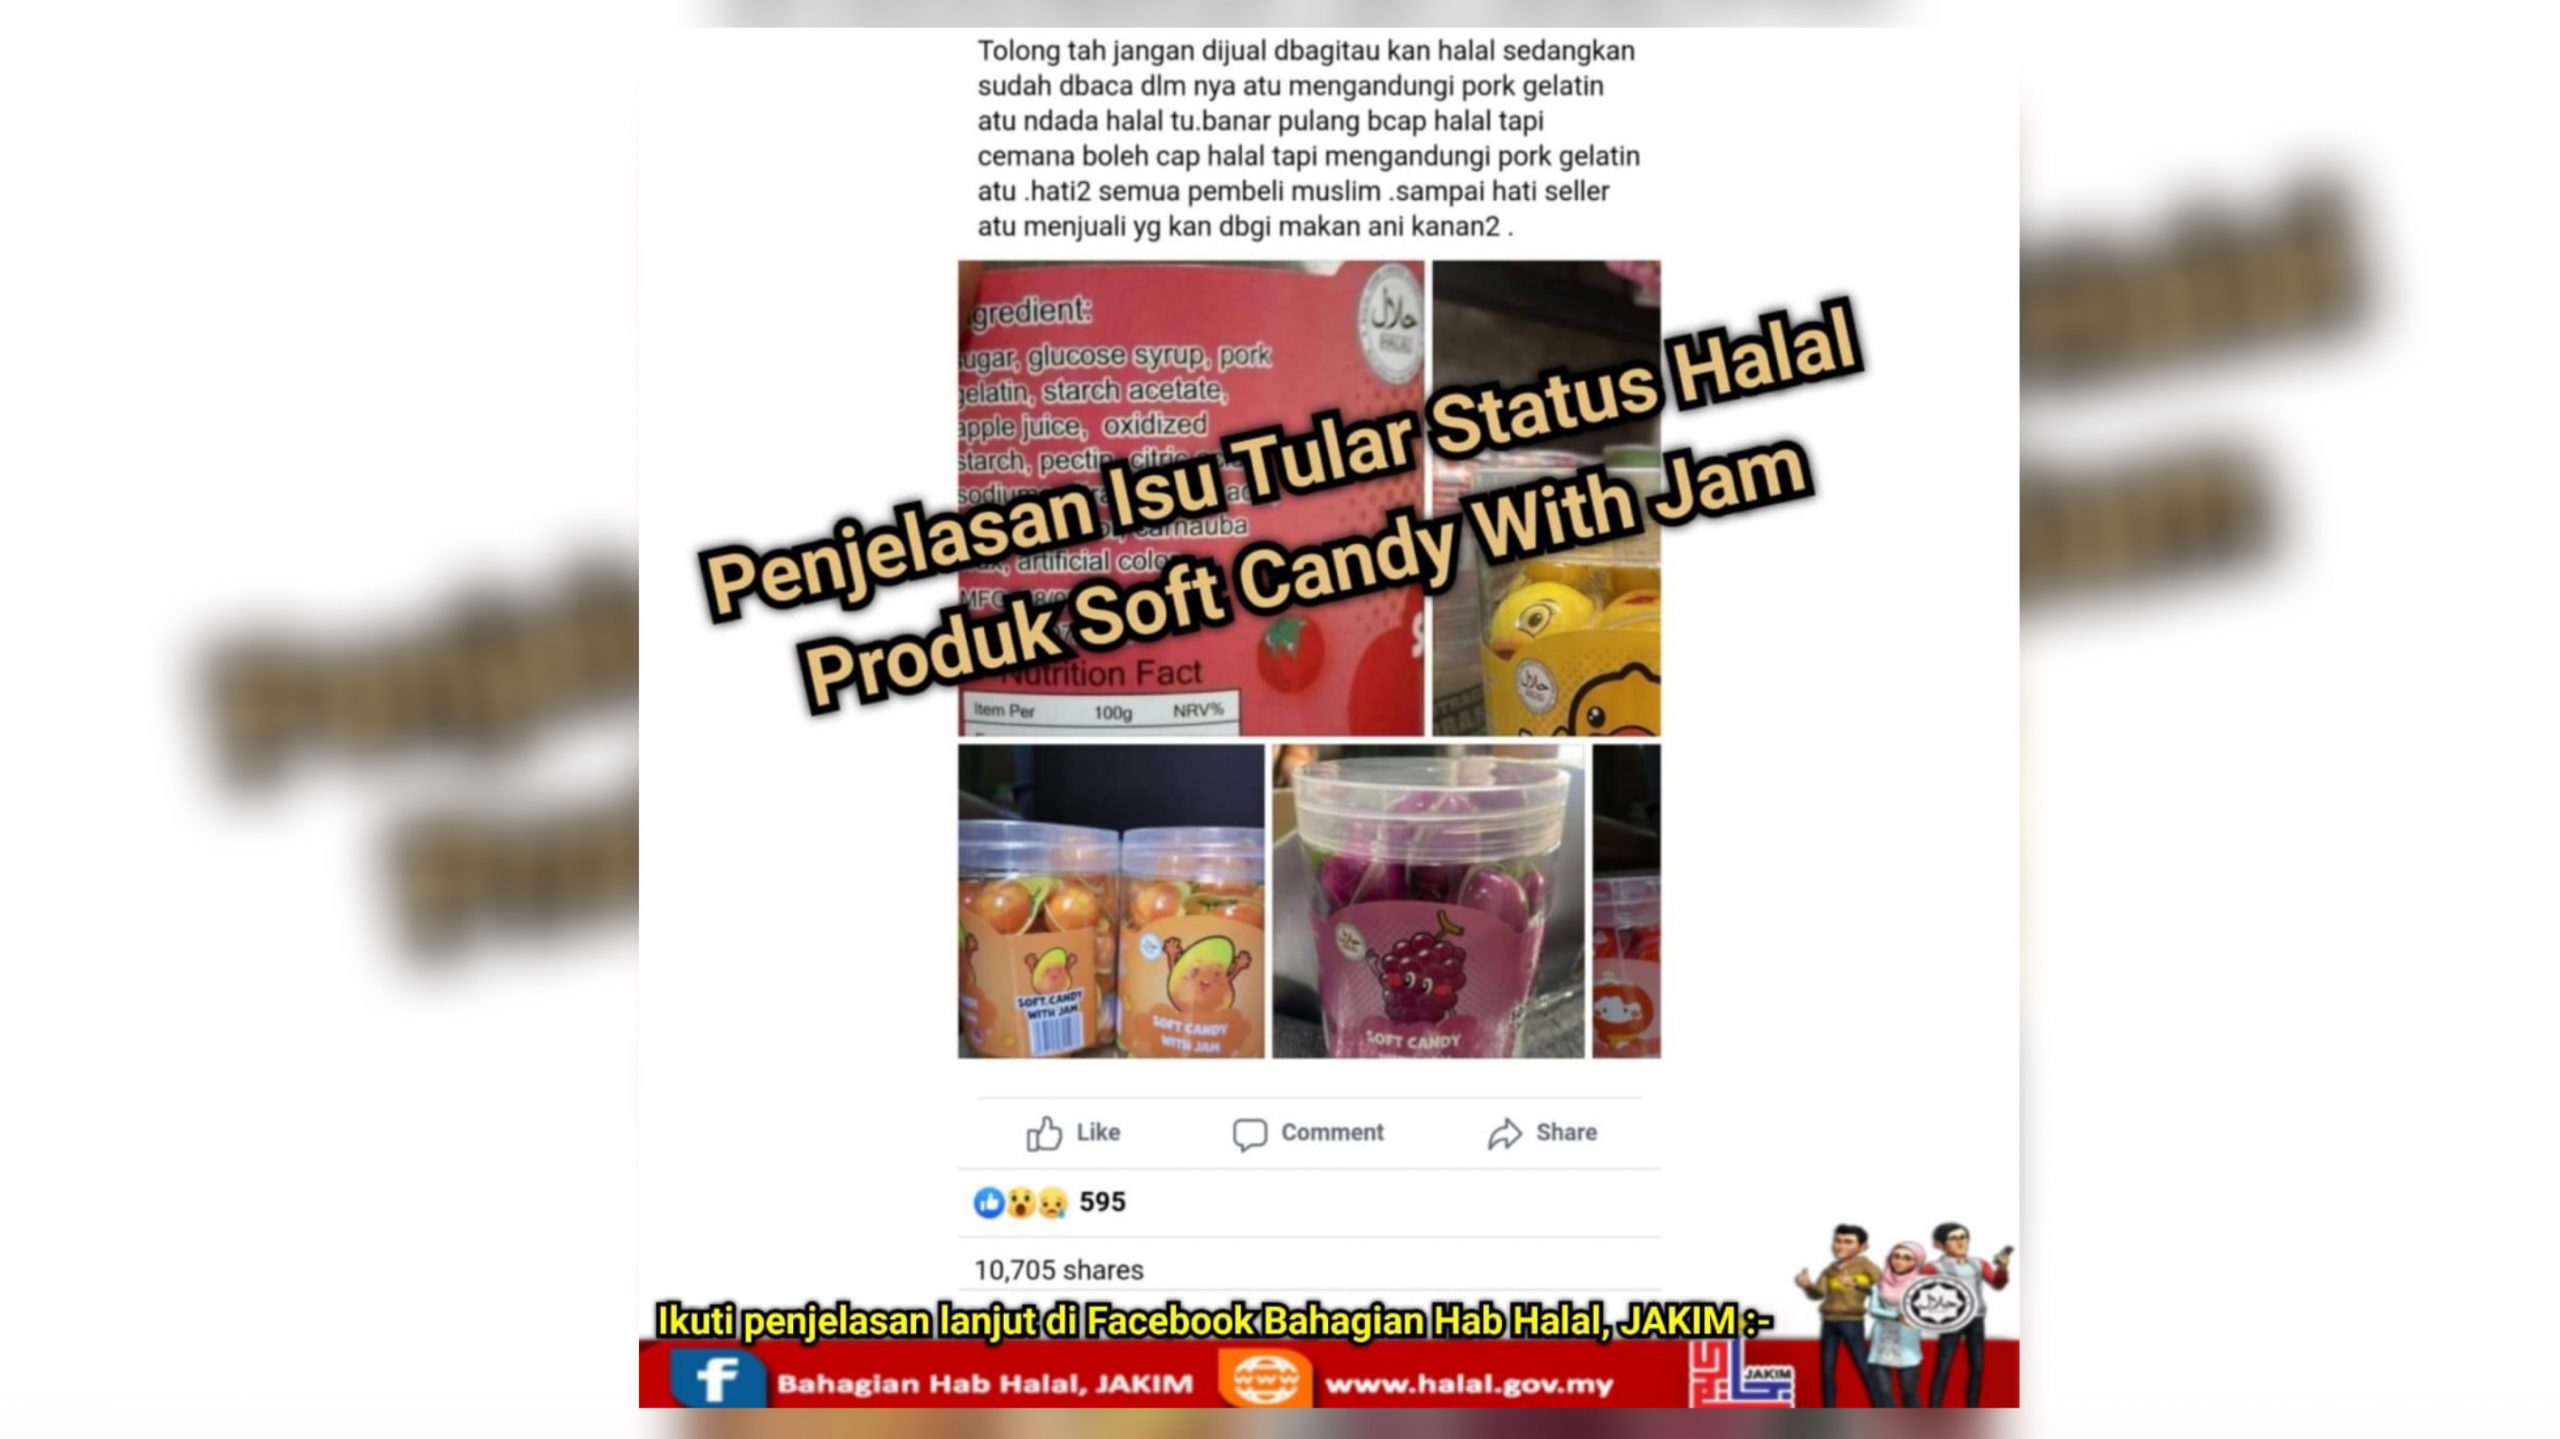 Produk Soft Candy With Jam guna logo halal tak diiktiraf